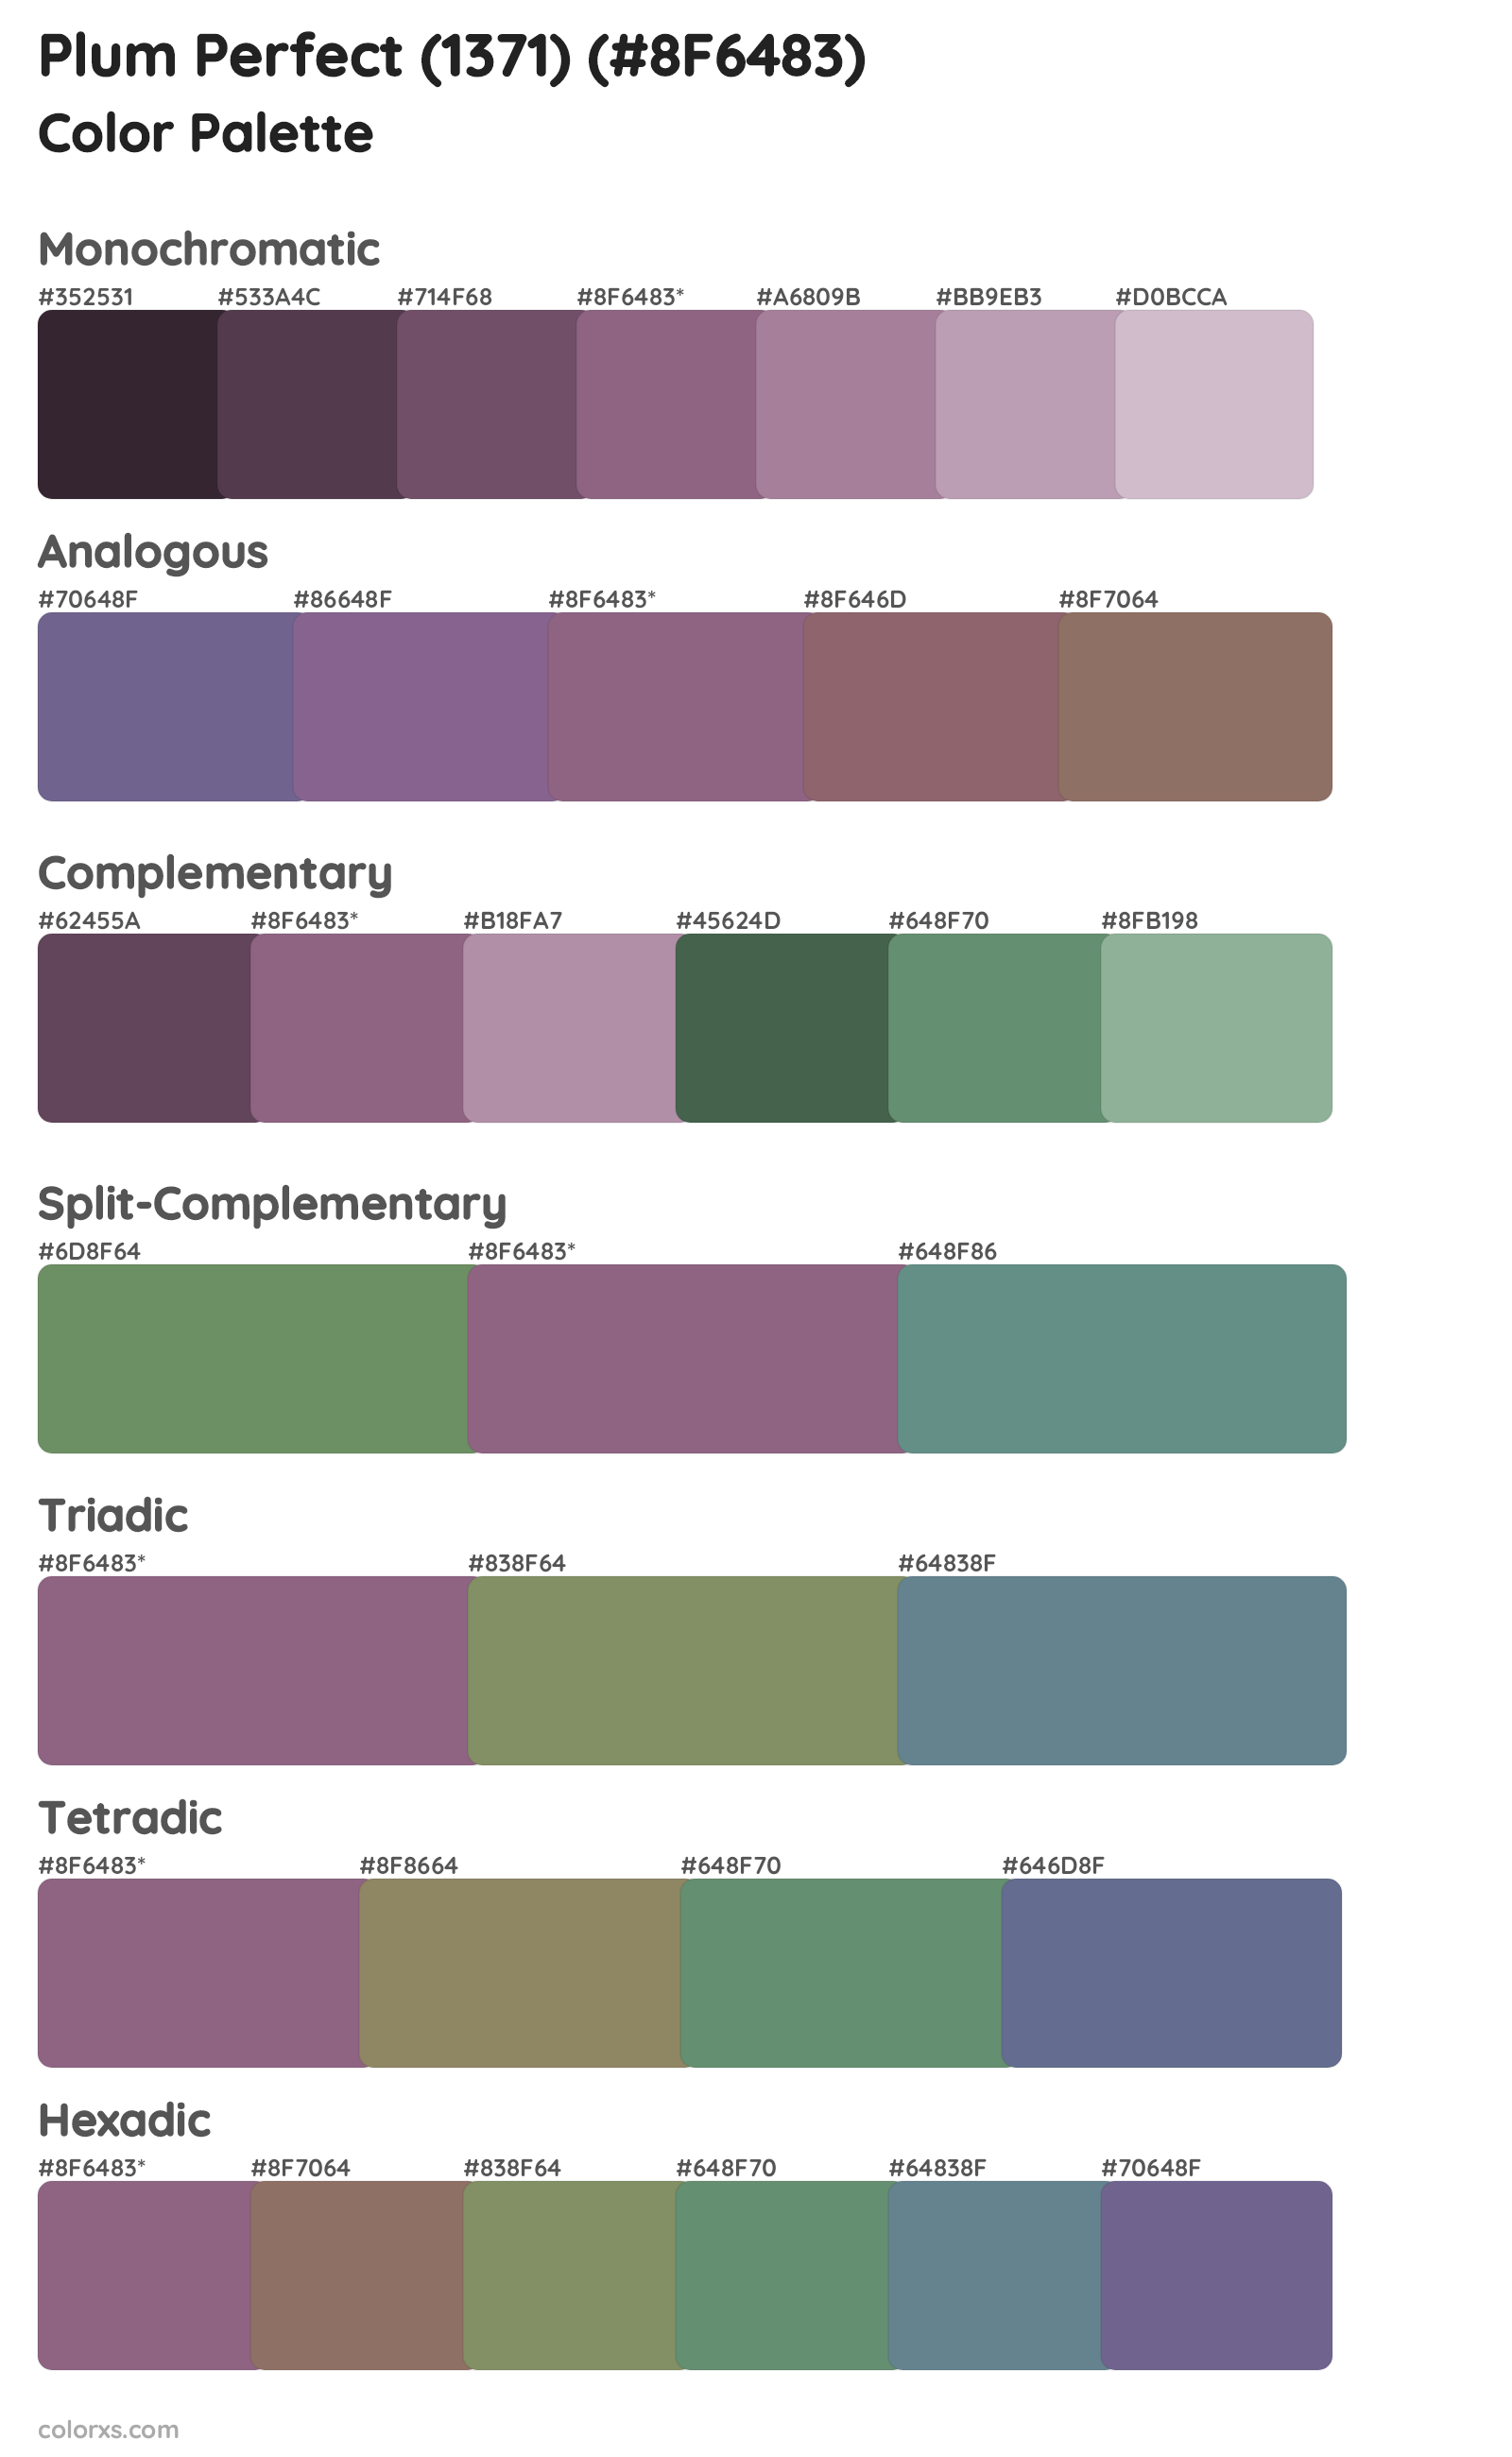 Plum Perfect (1371) Color Scheme Palettes